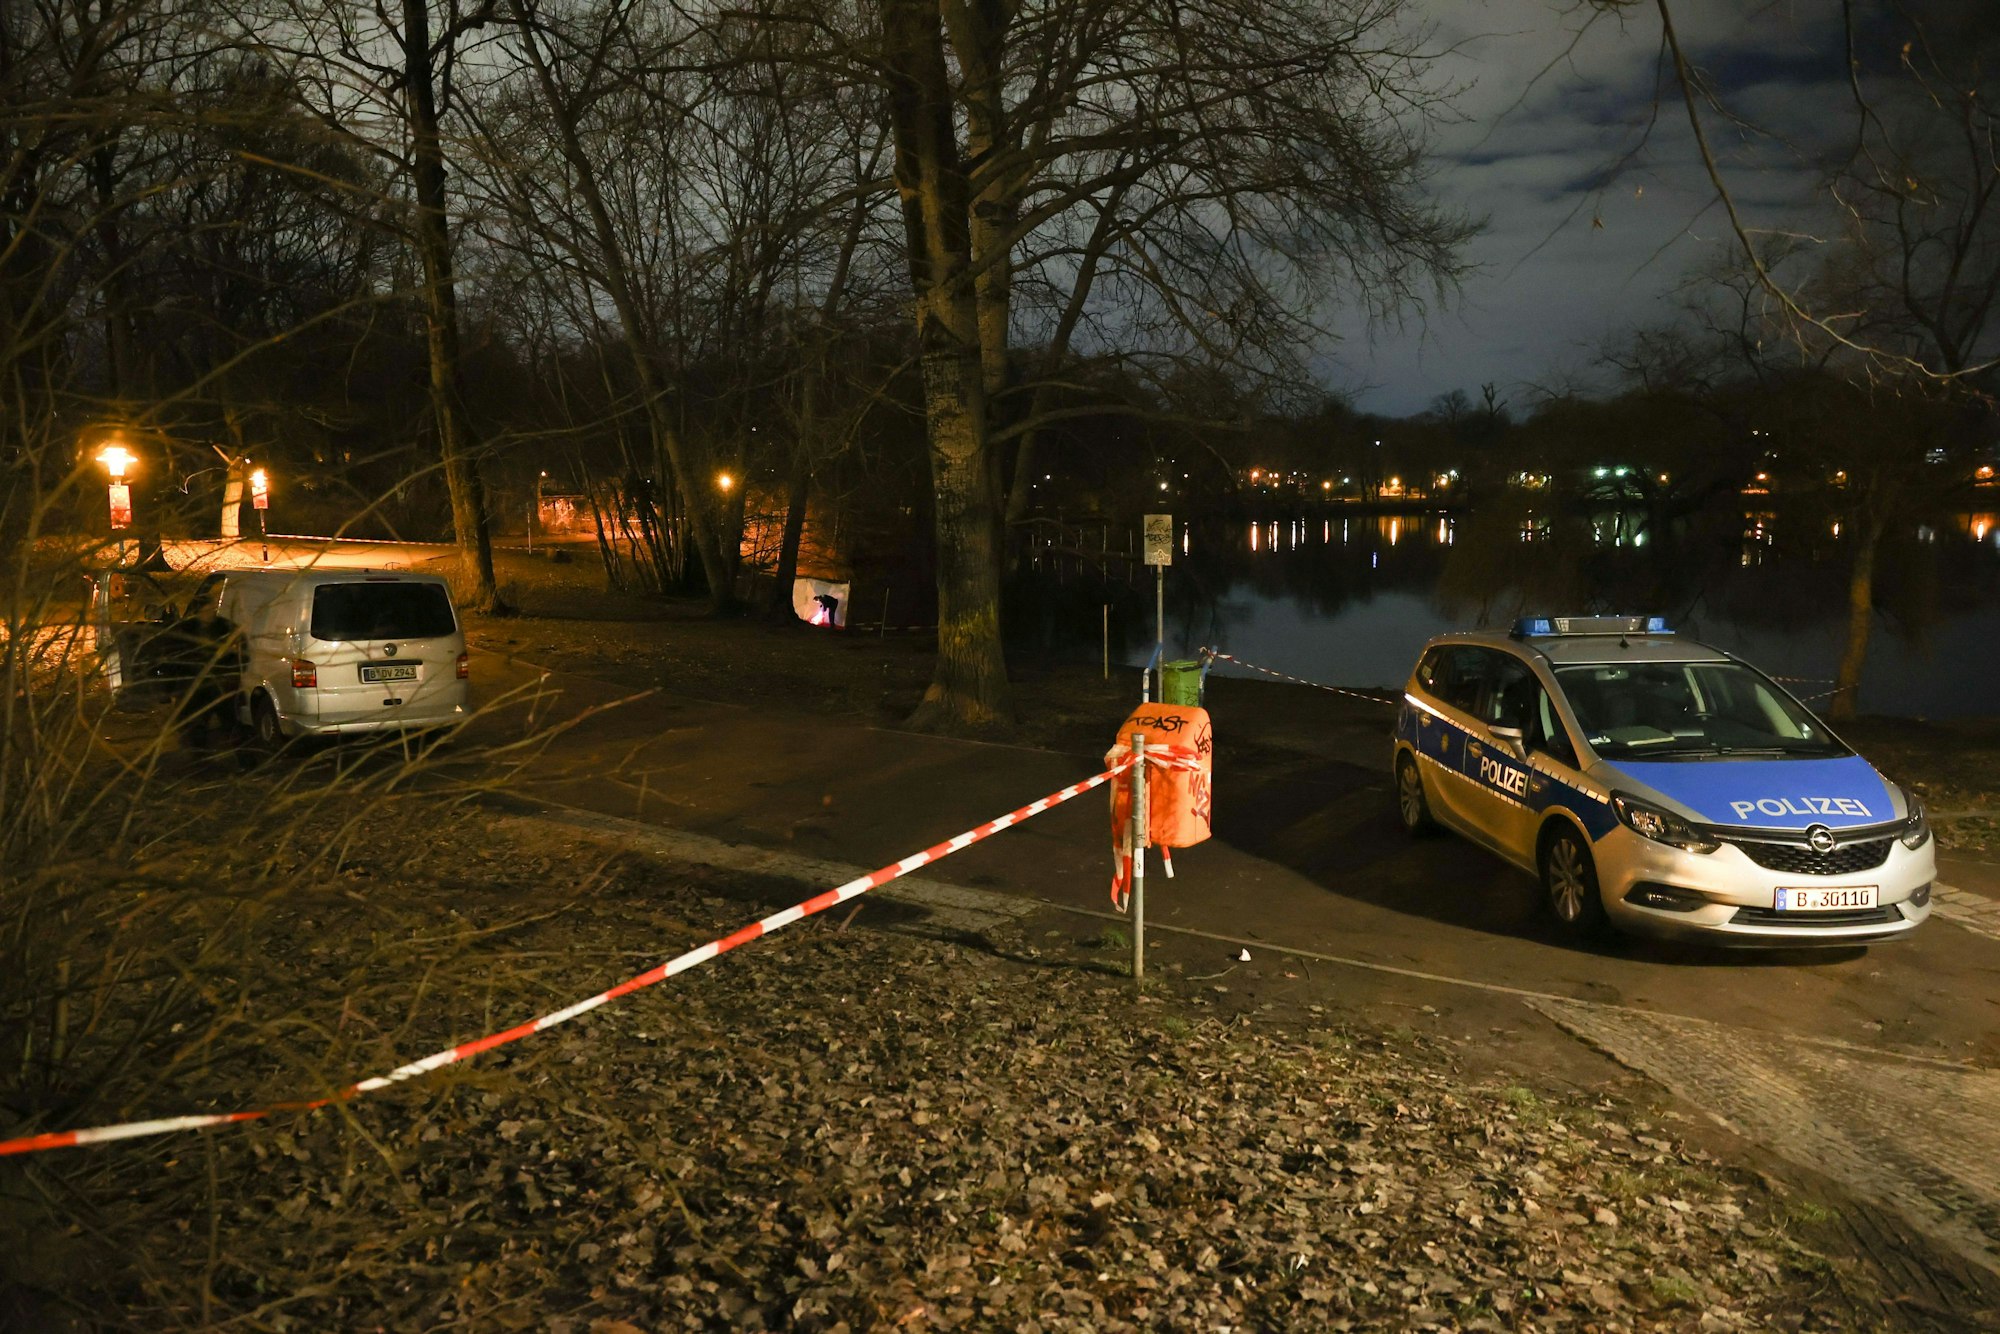 Fahrzeuge der Polizei stehen am Ufer des Weißen Sees in Berlin-Pankow. Am Ufer des Sees wurden zwei Leichen gefunden. Es soll sich um eine Frau und ein Kleinkind handeln, teilte die Polizei mit.